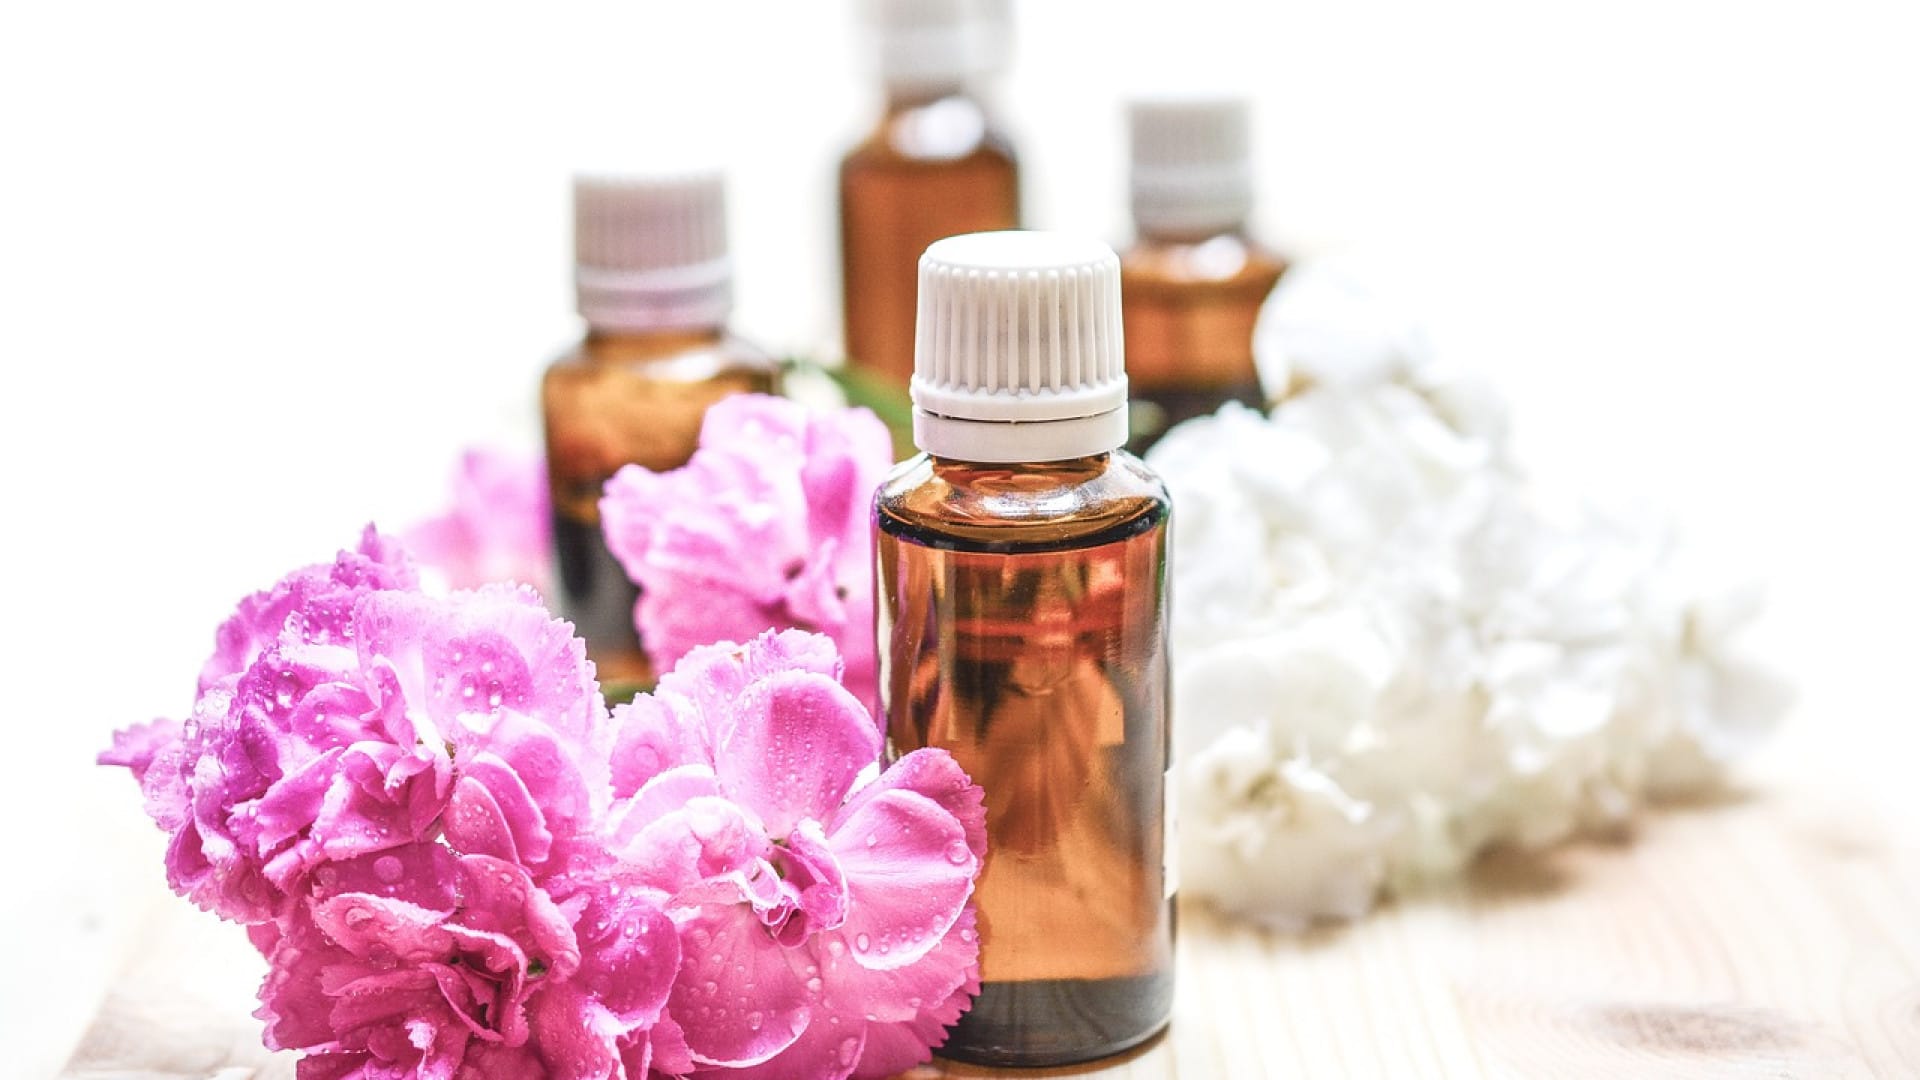 Bouteilles d'huile essentielle avec fleurs roses et blanches fraîches sur une surface en bois.